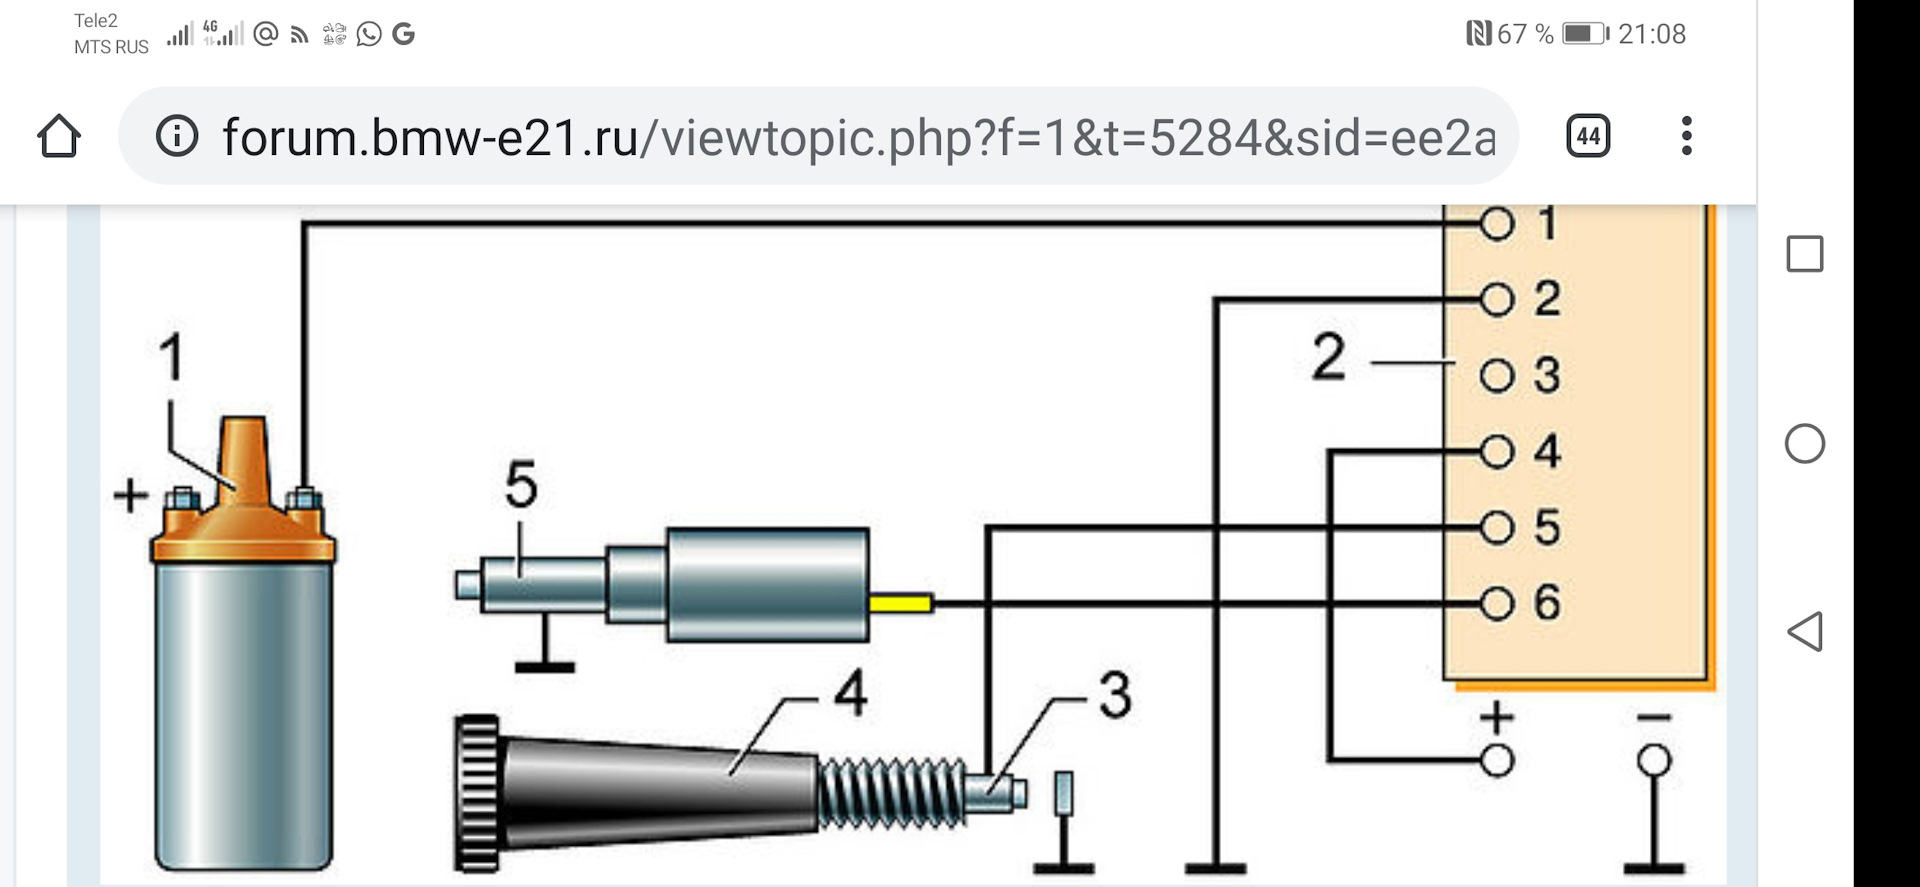 Ваз-21213 (нива). система управления электромагнитным клапаном карбюратора